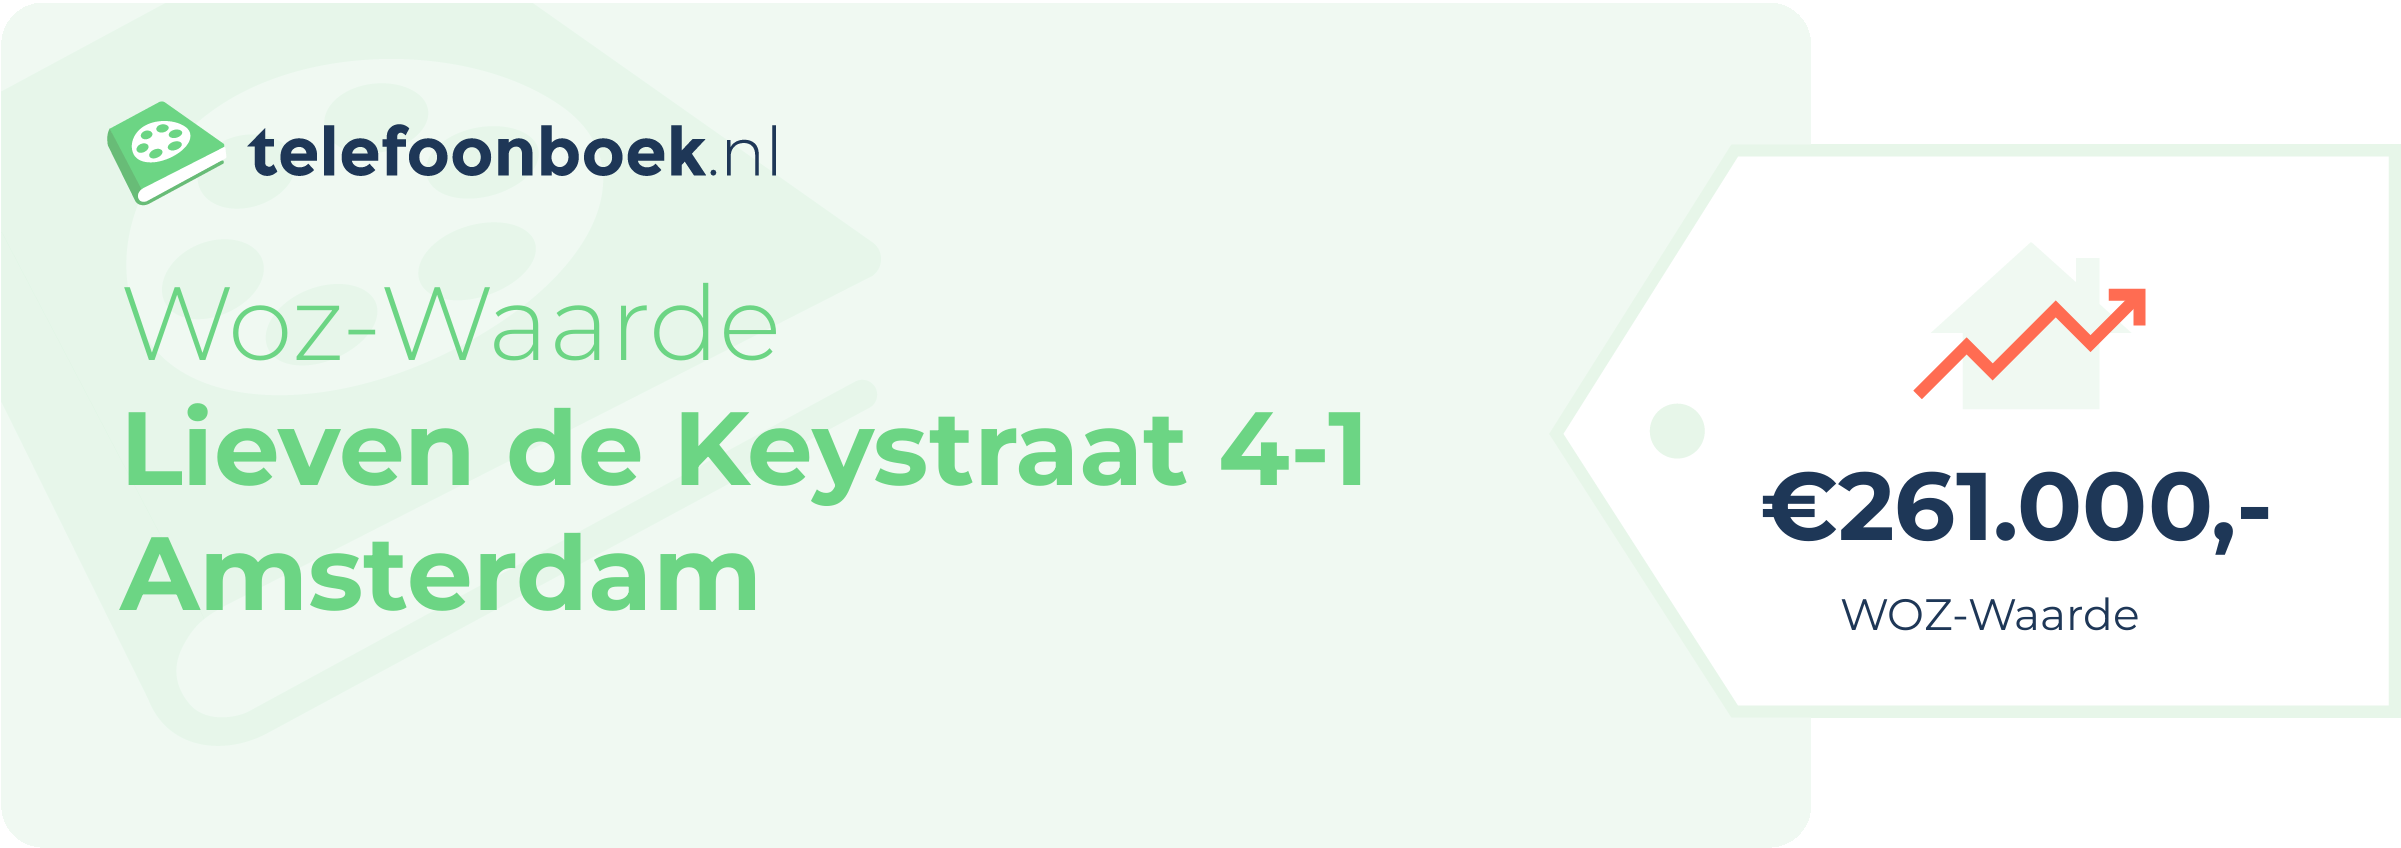 WOZ-waarde Lieven De Keystraat 4-1 Amsterdam